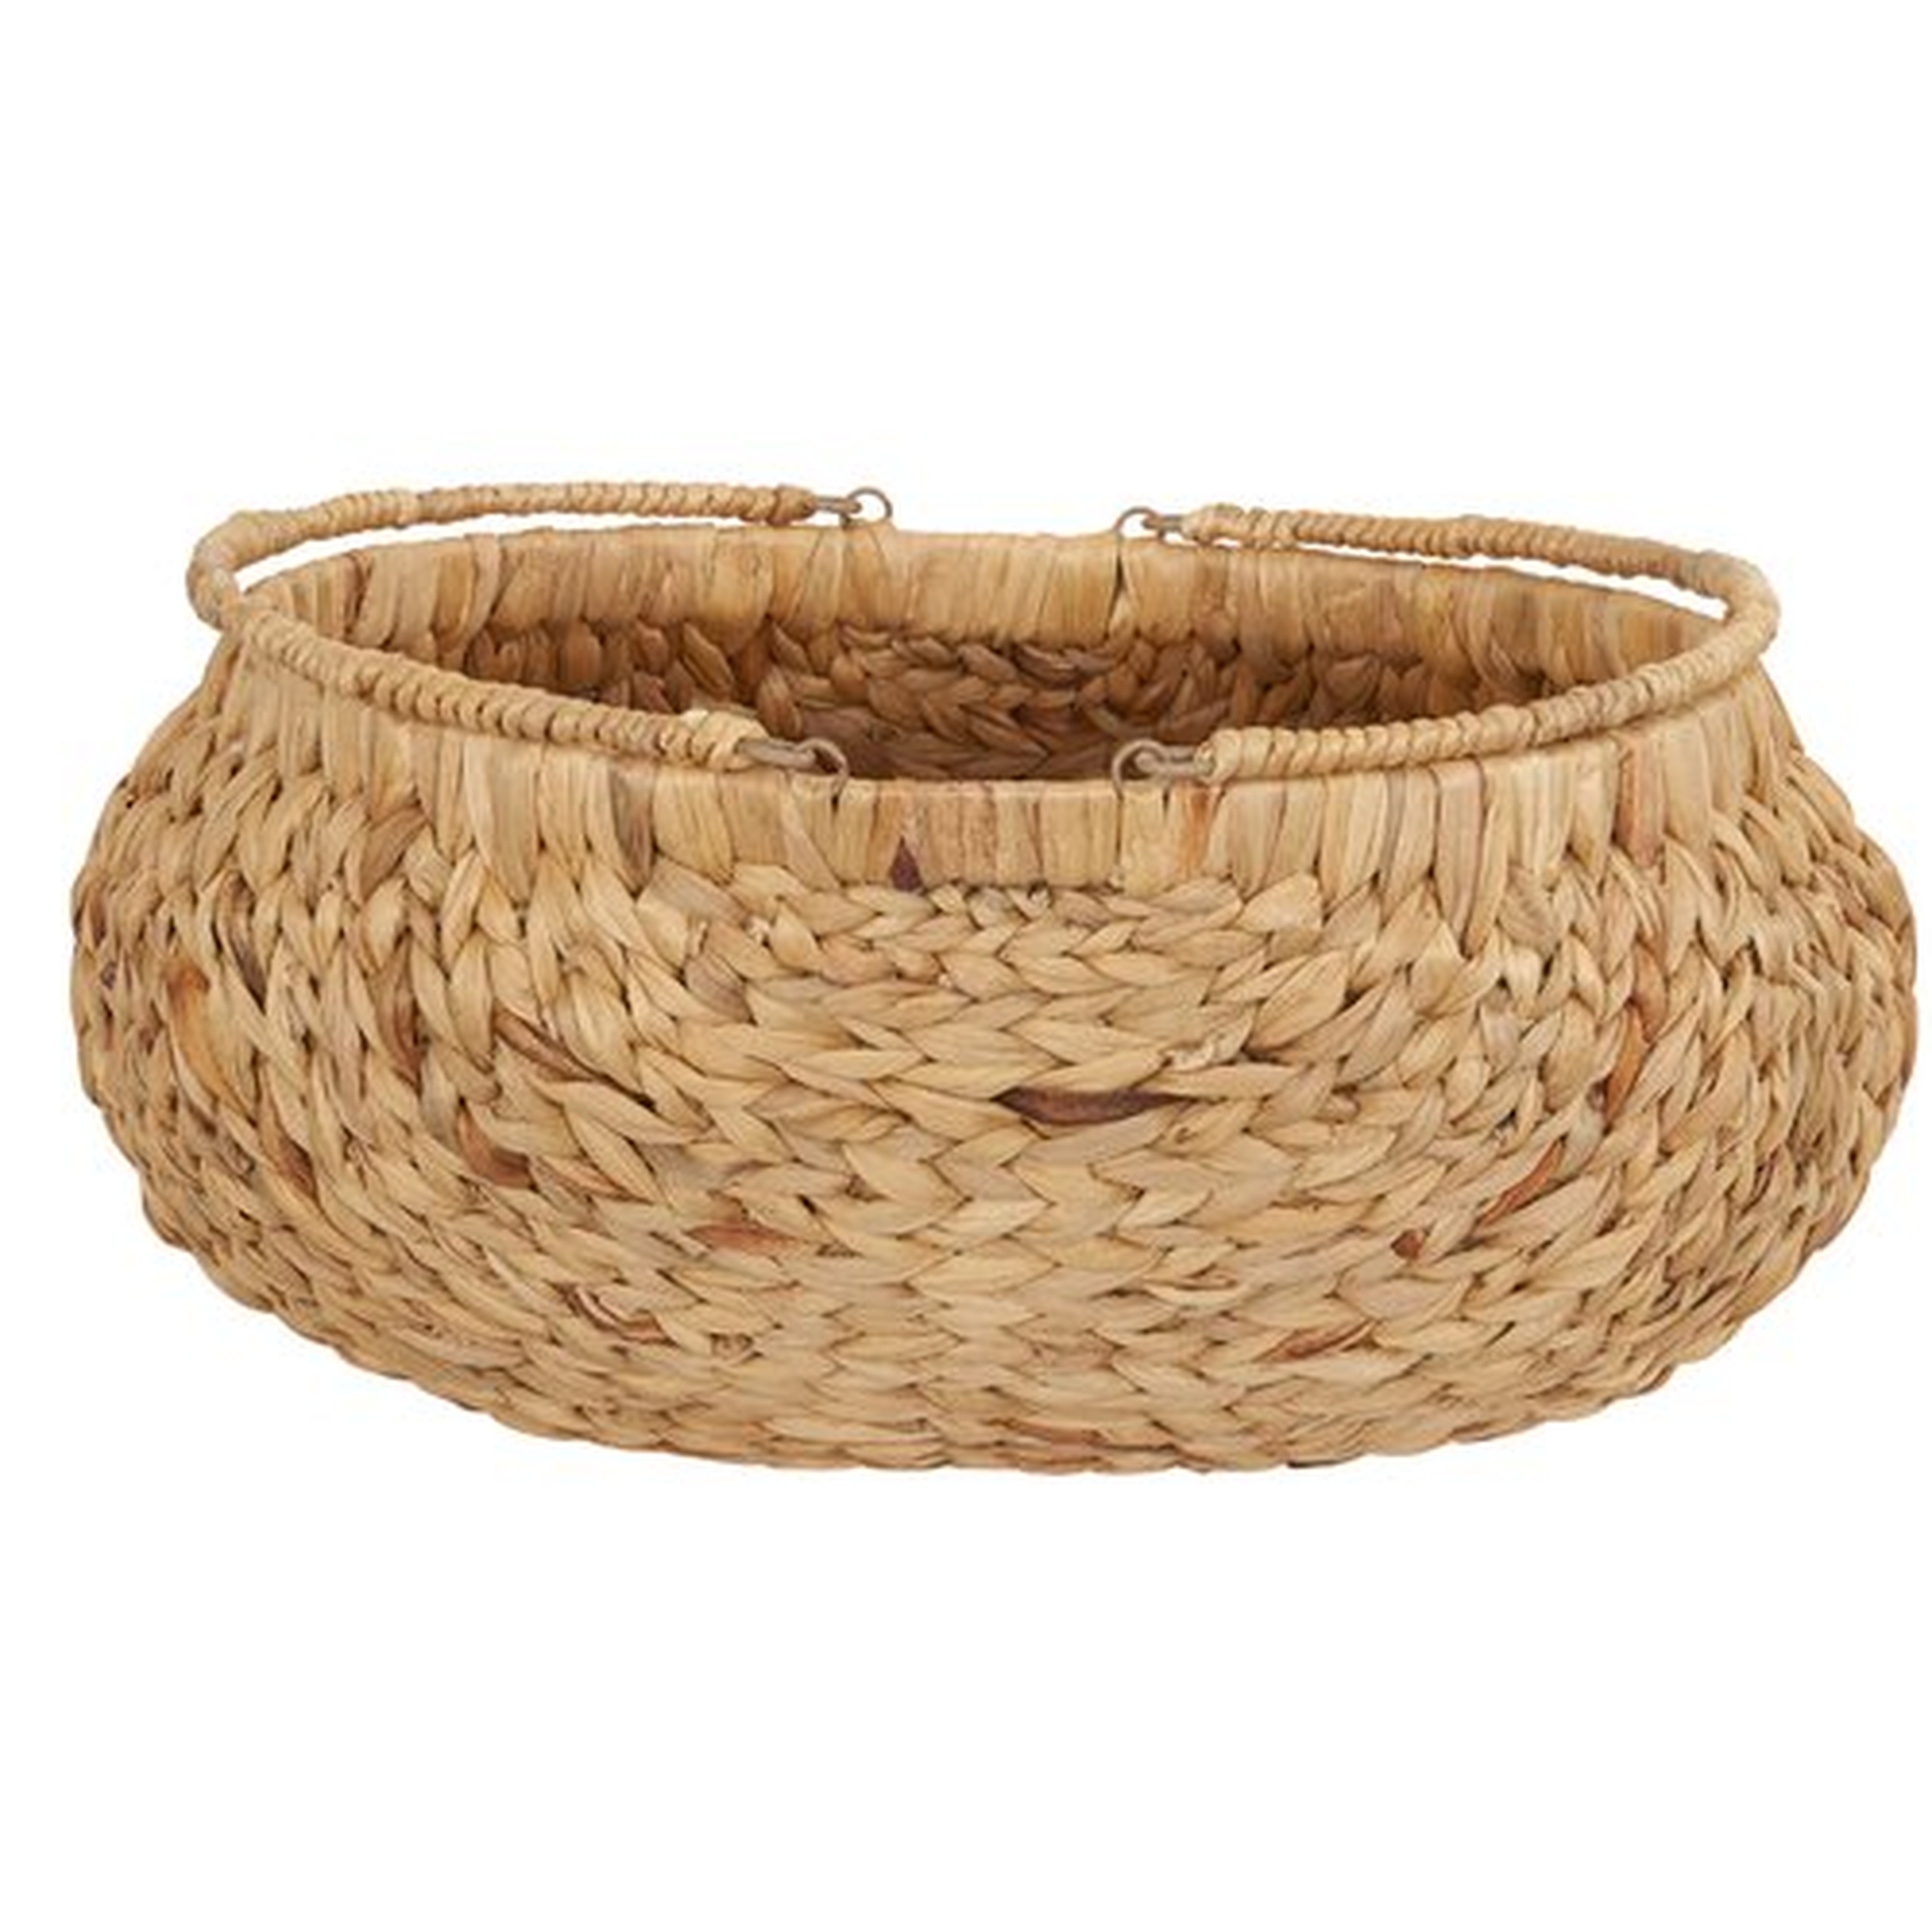 Decorative Round Wicker Basket - Wayfair